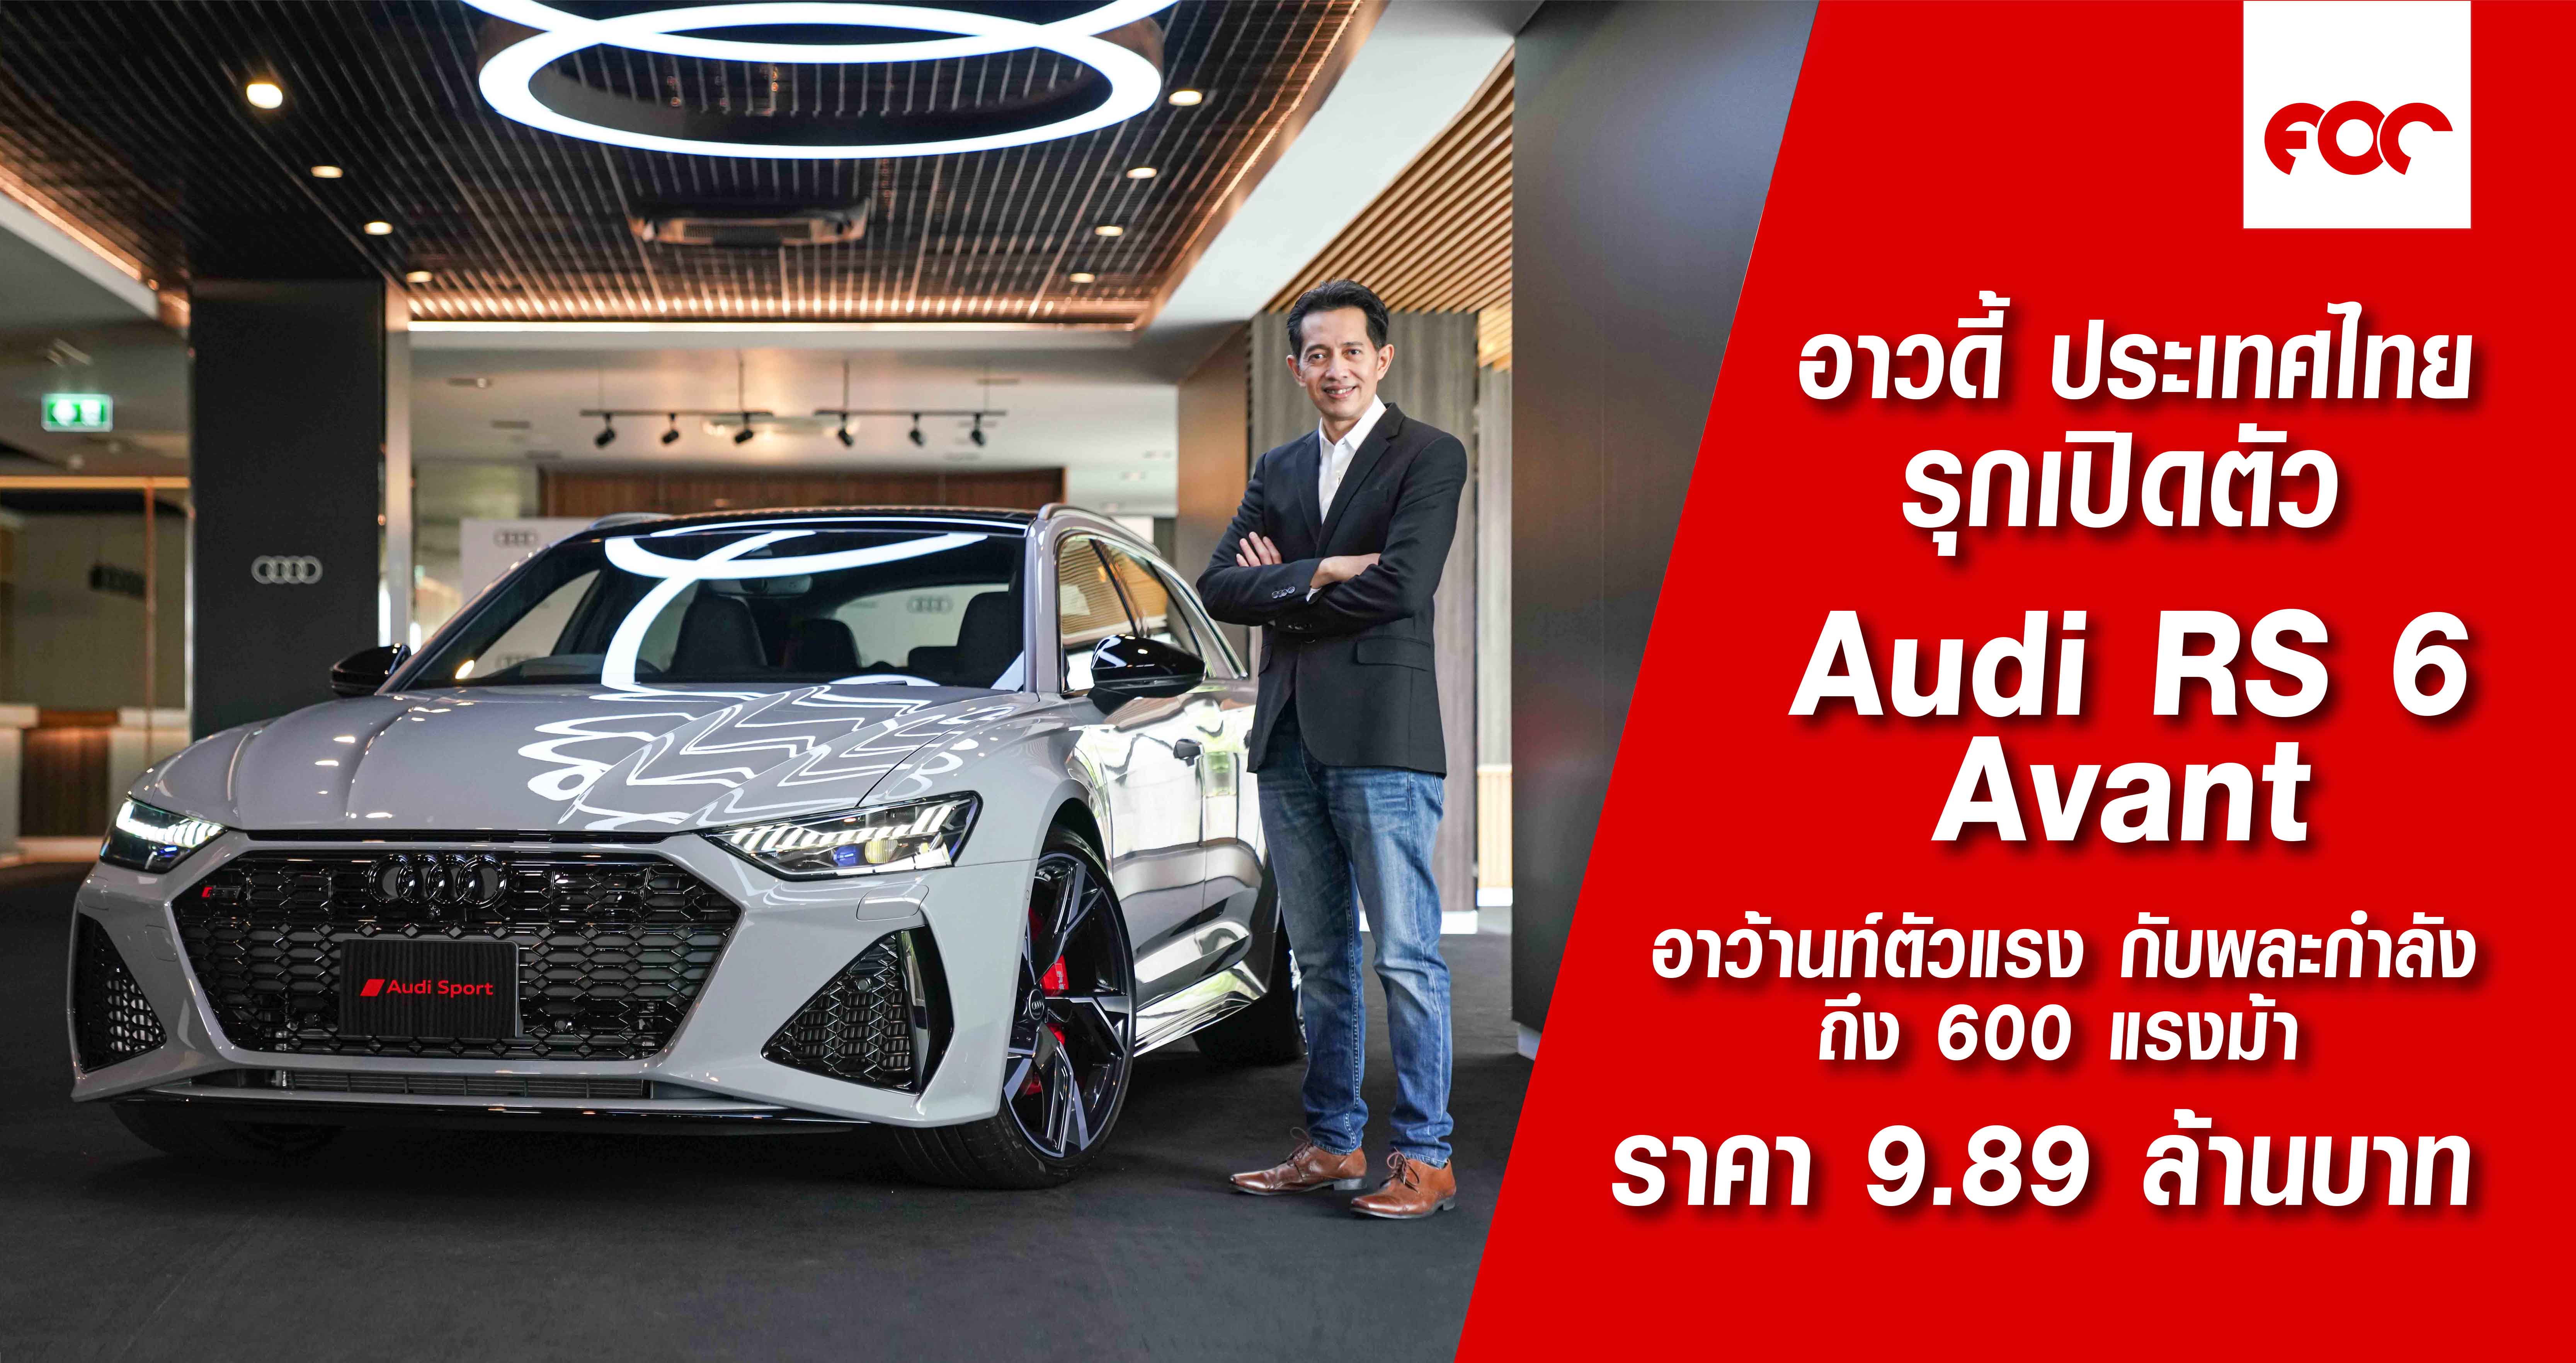 อาวดี้ ประเทศไทย รุกเปิดตัว Audi RS 6 Avant  พละกำลังล้ำเลิศถึง 600 แรงม้า ราคาเพียง 9.89 ล้านบาท